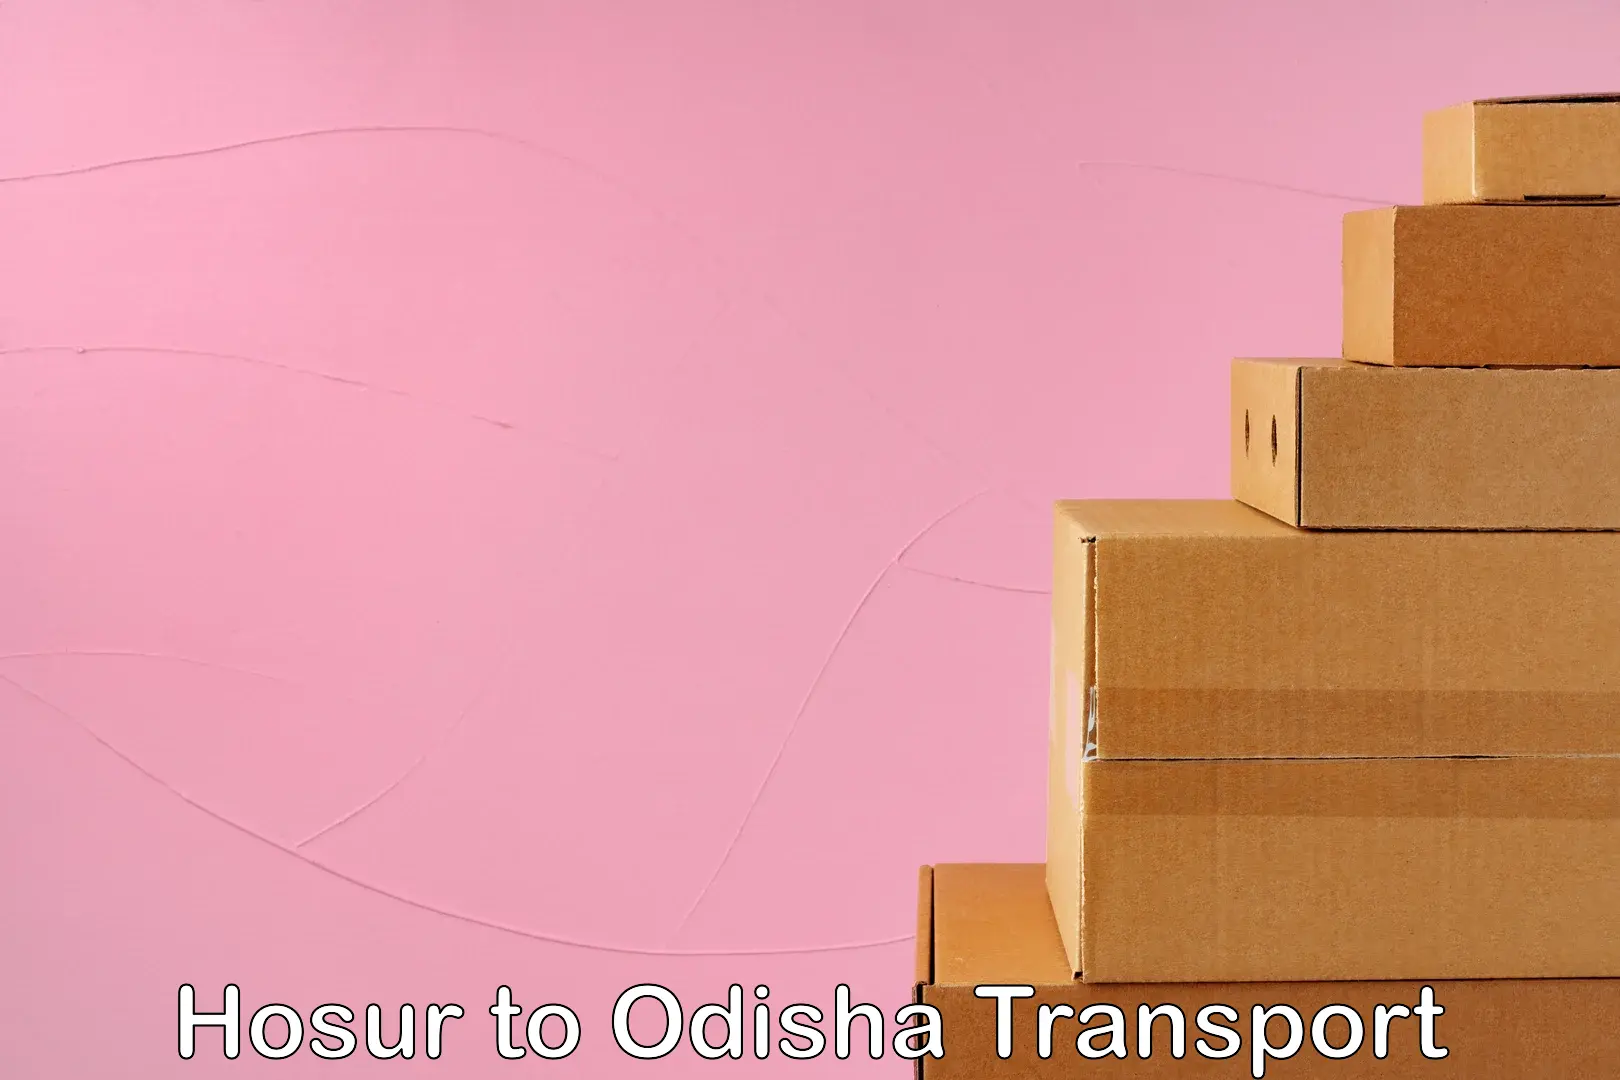 Road transport online services Hosur to Sohela